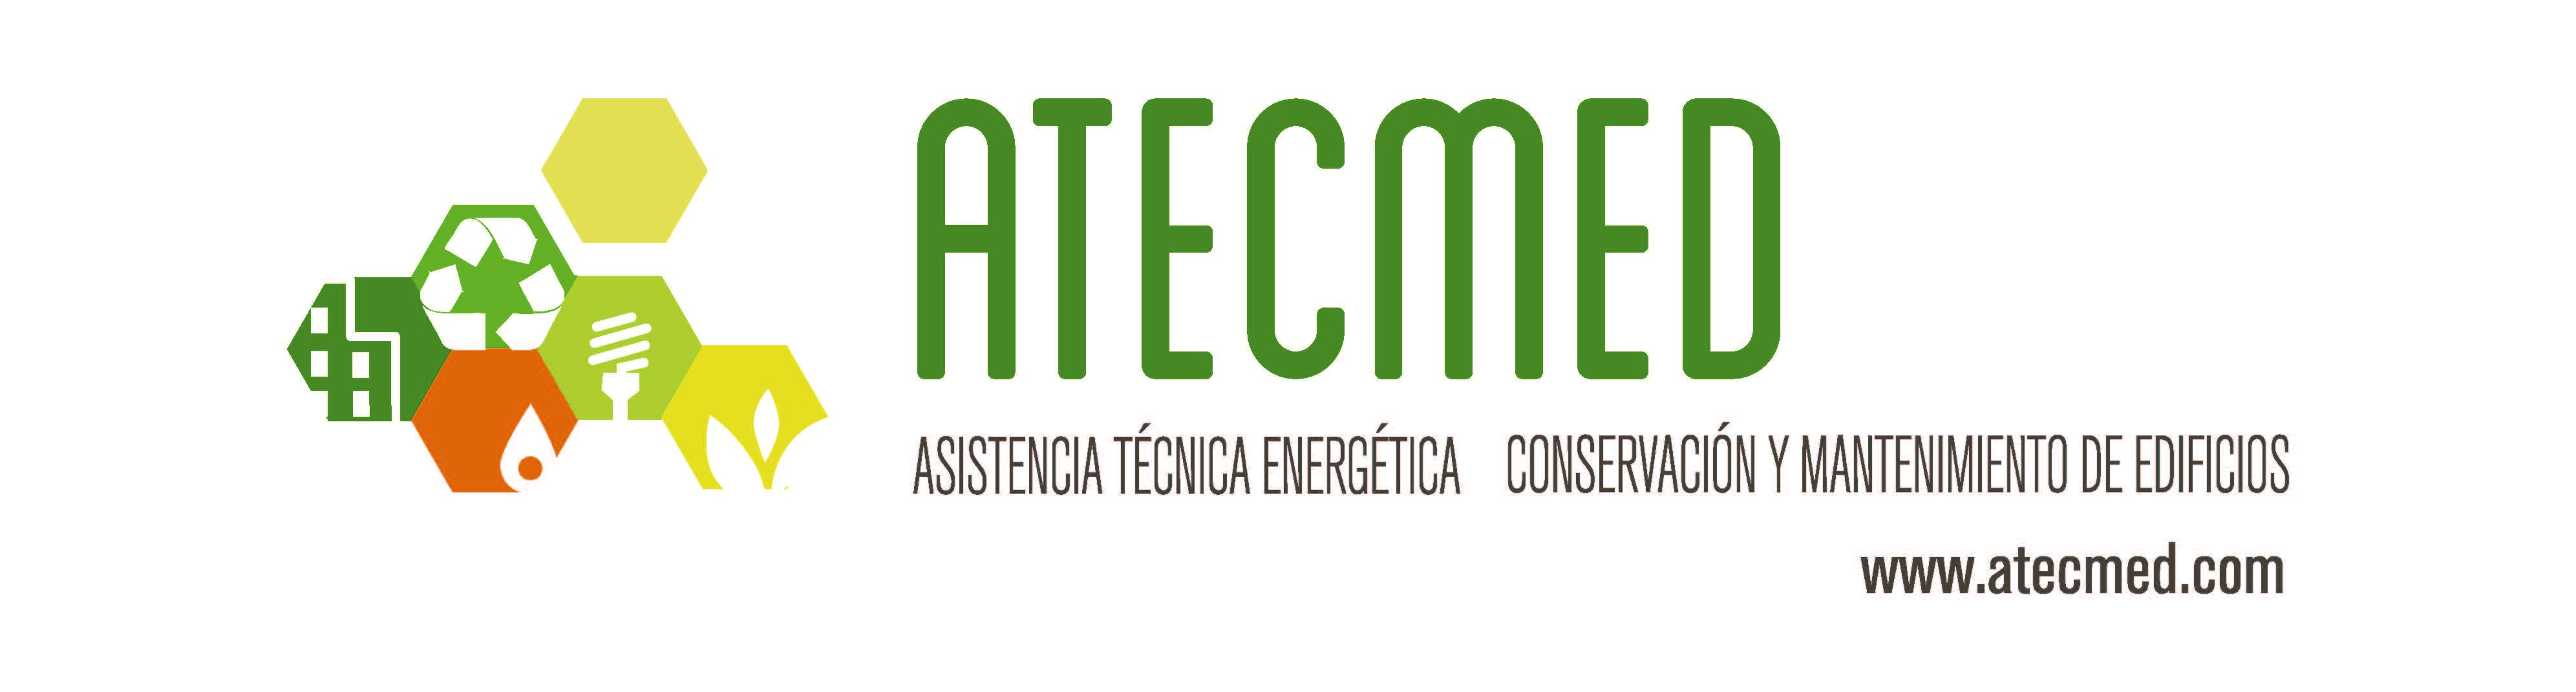 ASISTENCIA TÉCNICA ENERGÉTICA, CONSERVACIÓN Y MANTENIMIENTO DE EDIFICIOS S.L.  ( ATECMED)